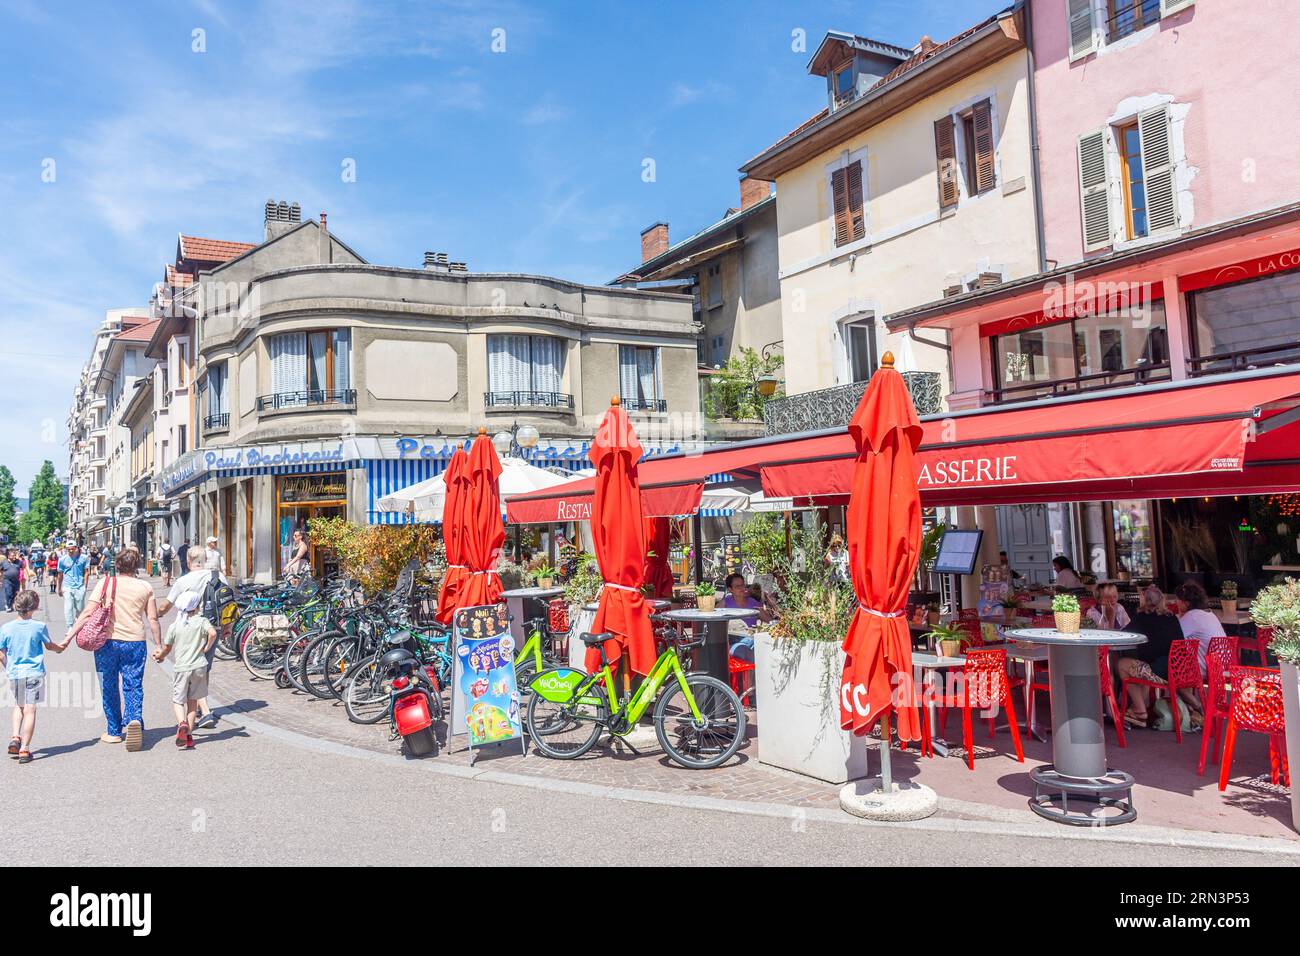 La Coupole Restaurant, Rue De La Republic Pont, Vieille Ville, Annecy, Haute-Savoie, Auvergne-Rhône-Alpes, France Stock Photo